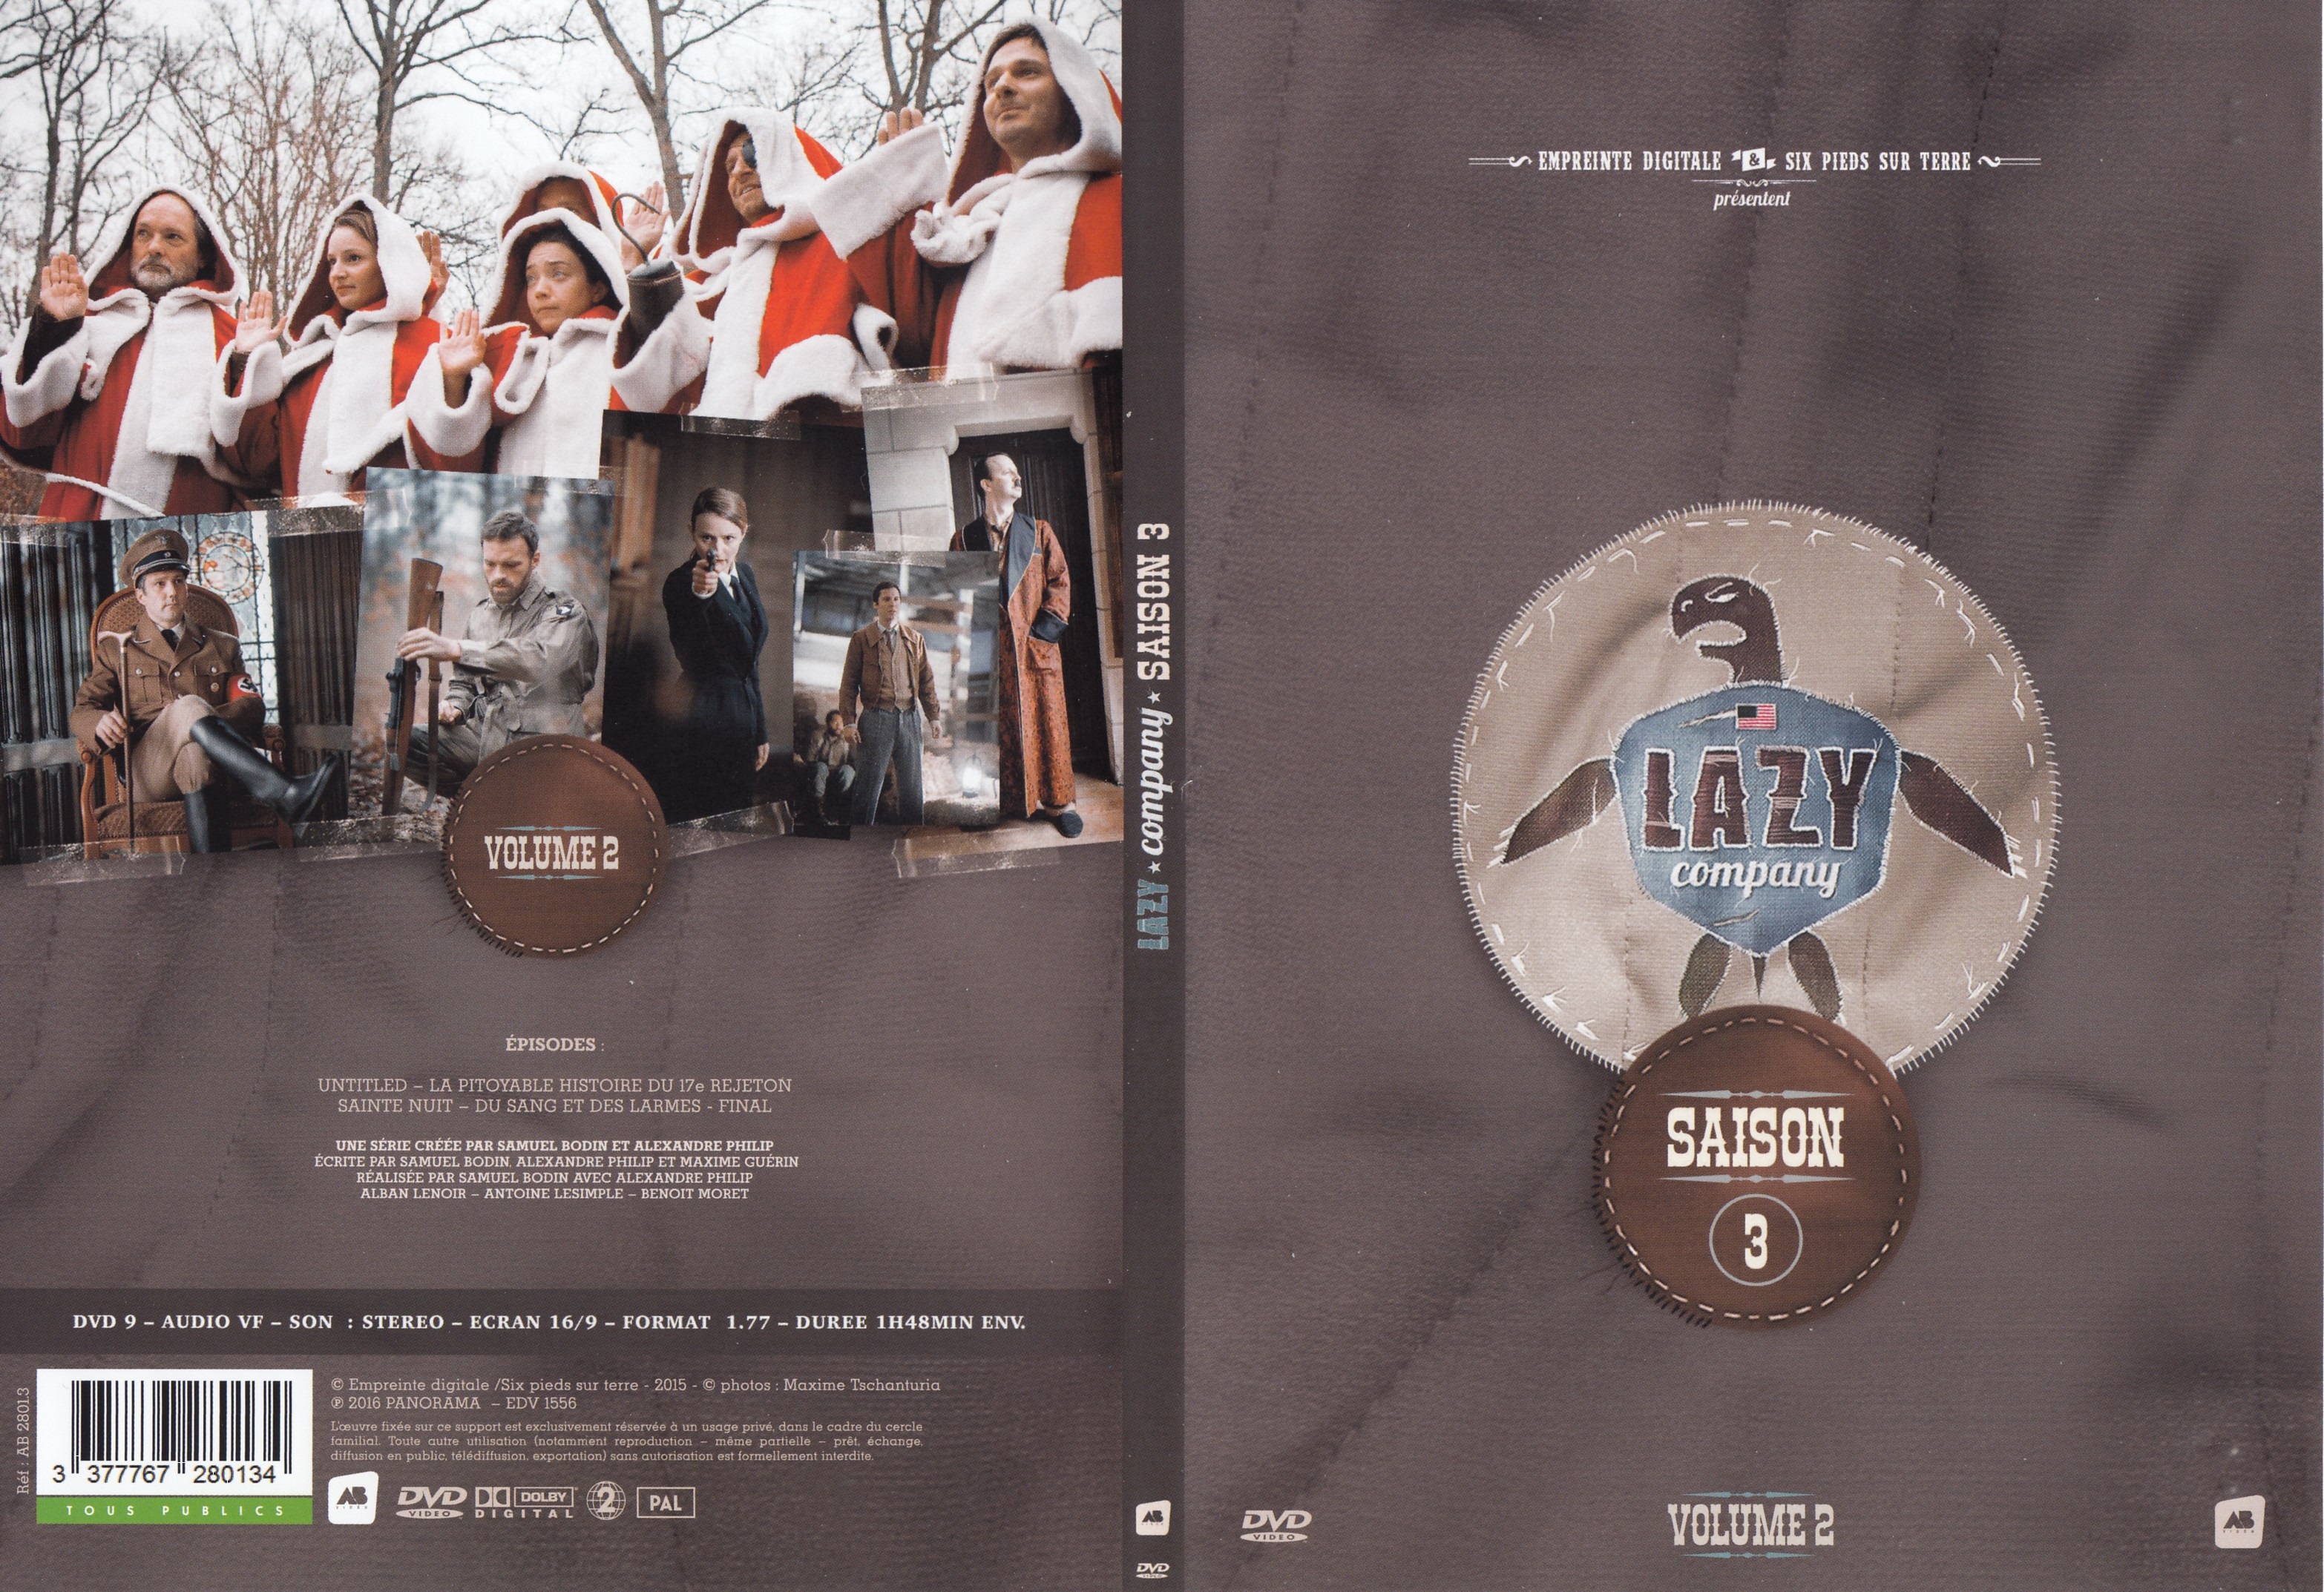 Jaquette DVD Lazy company Saison 3 vol 2